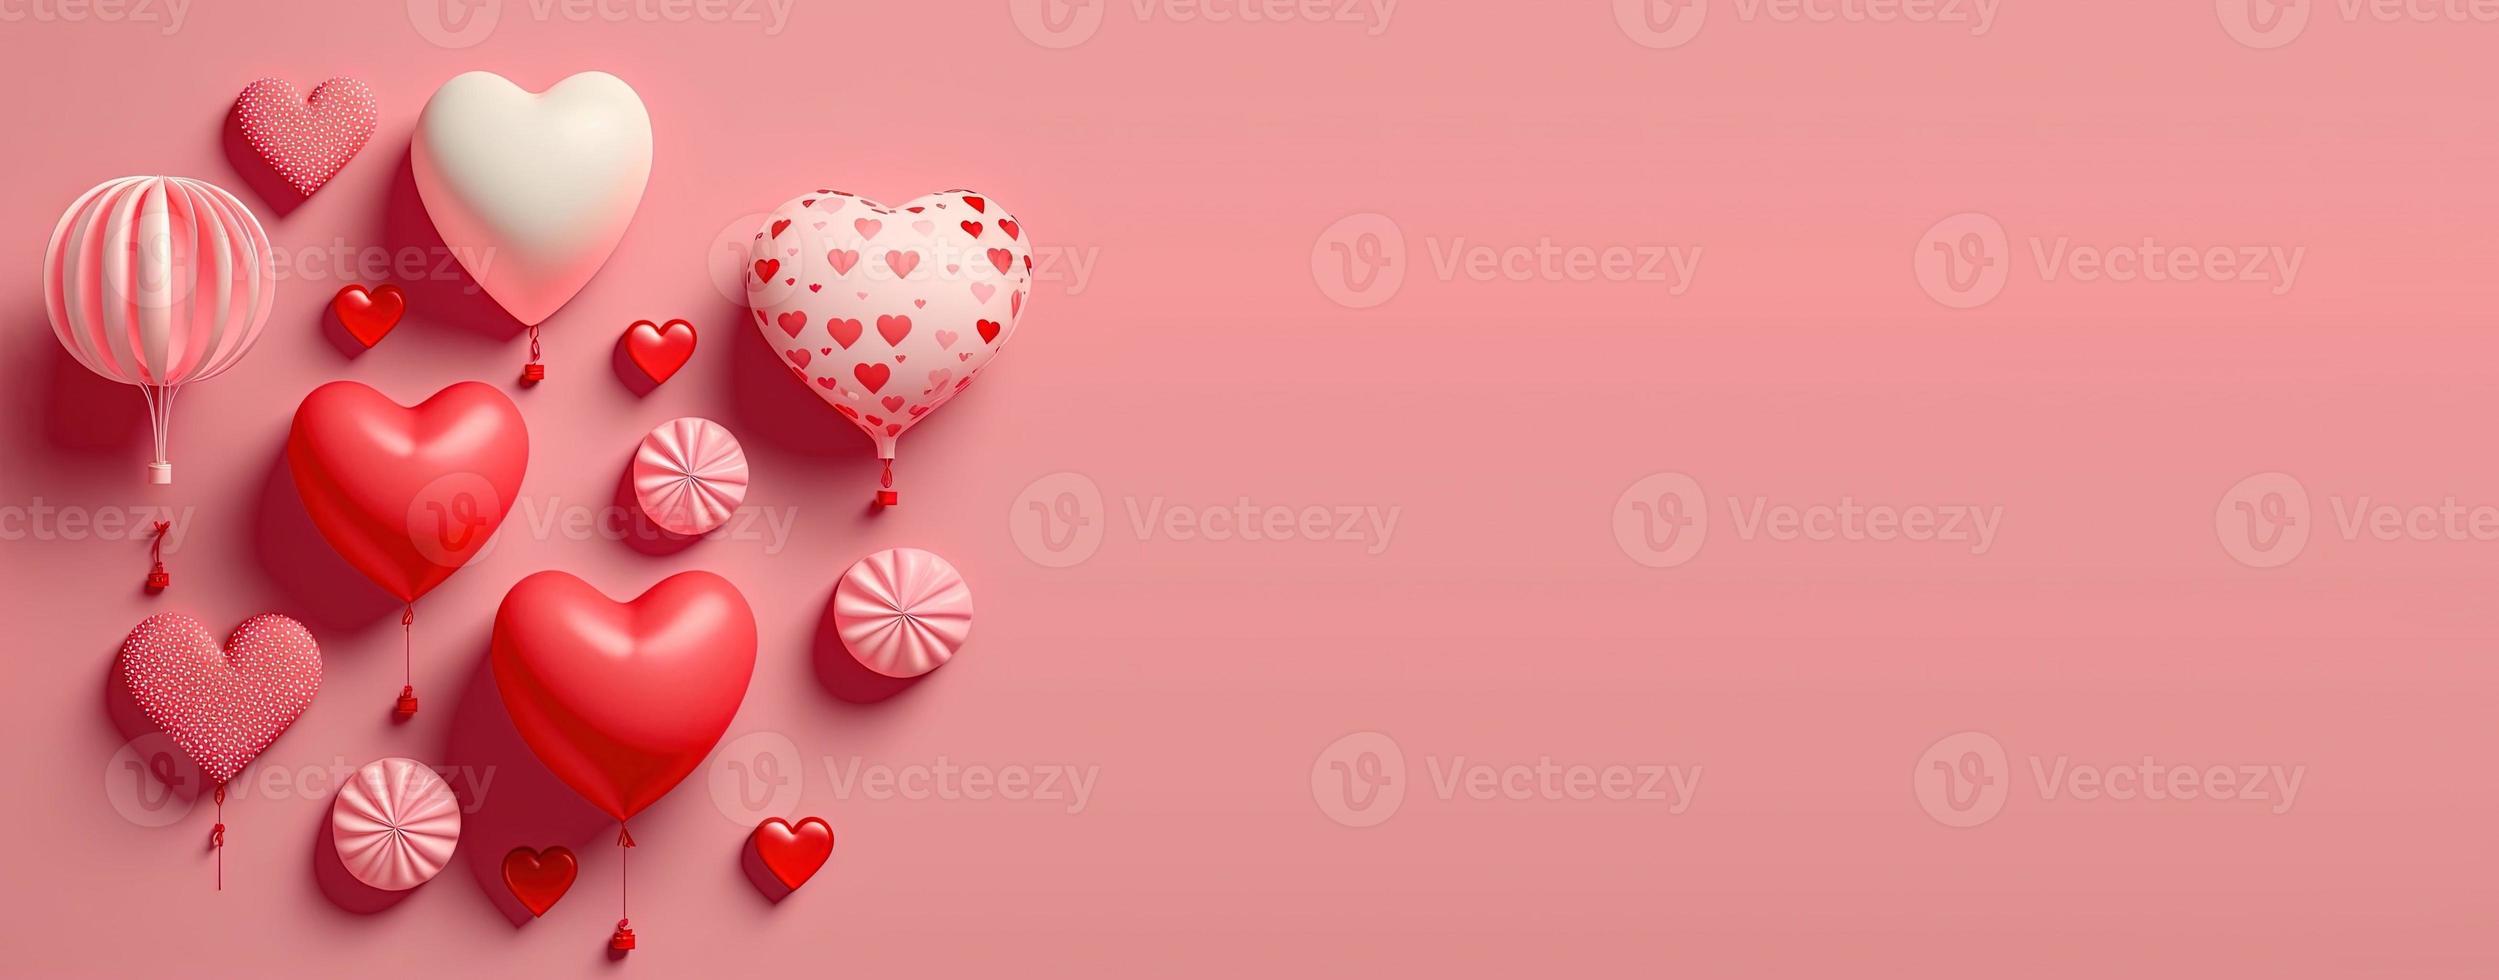 plano de fundo do dia dos namorados e forma de coração 3d brilhante com pequeno ornamento para banner foto